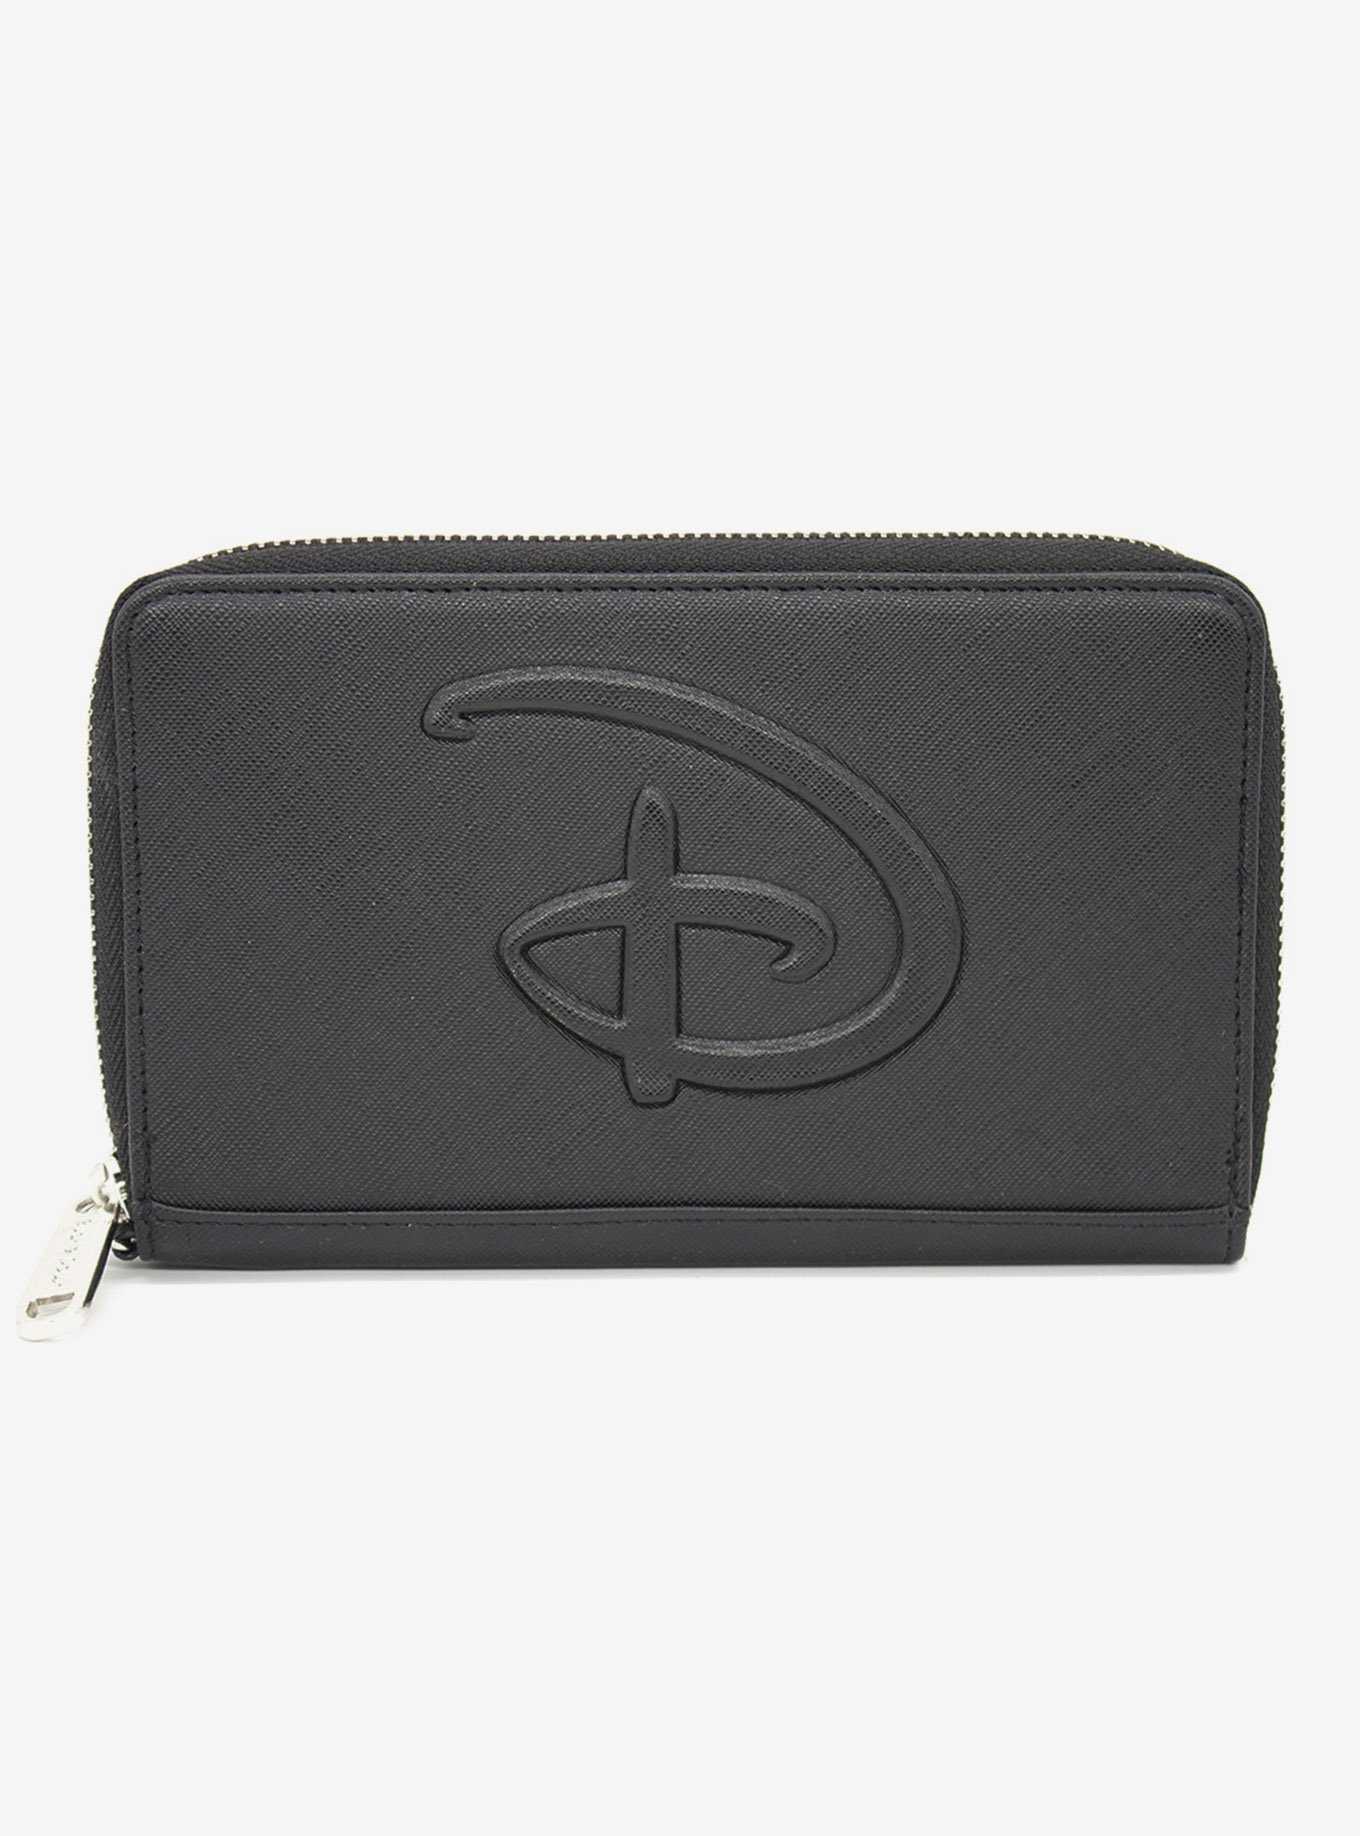 Disney Signature D Embossed Zip Wallet, , hi-res